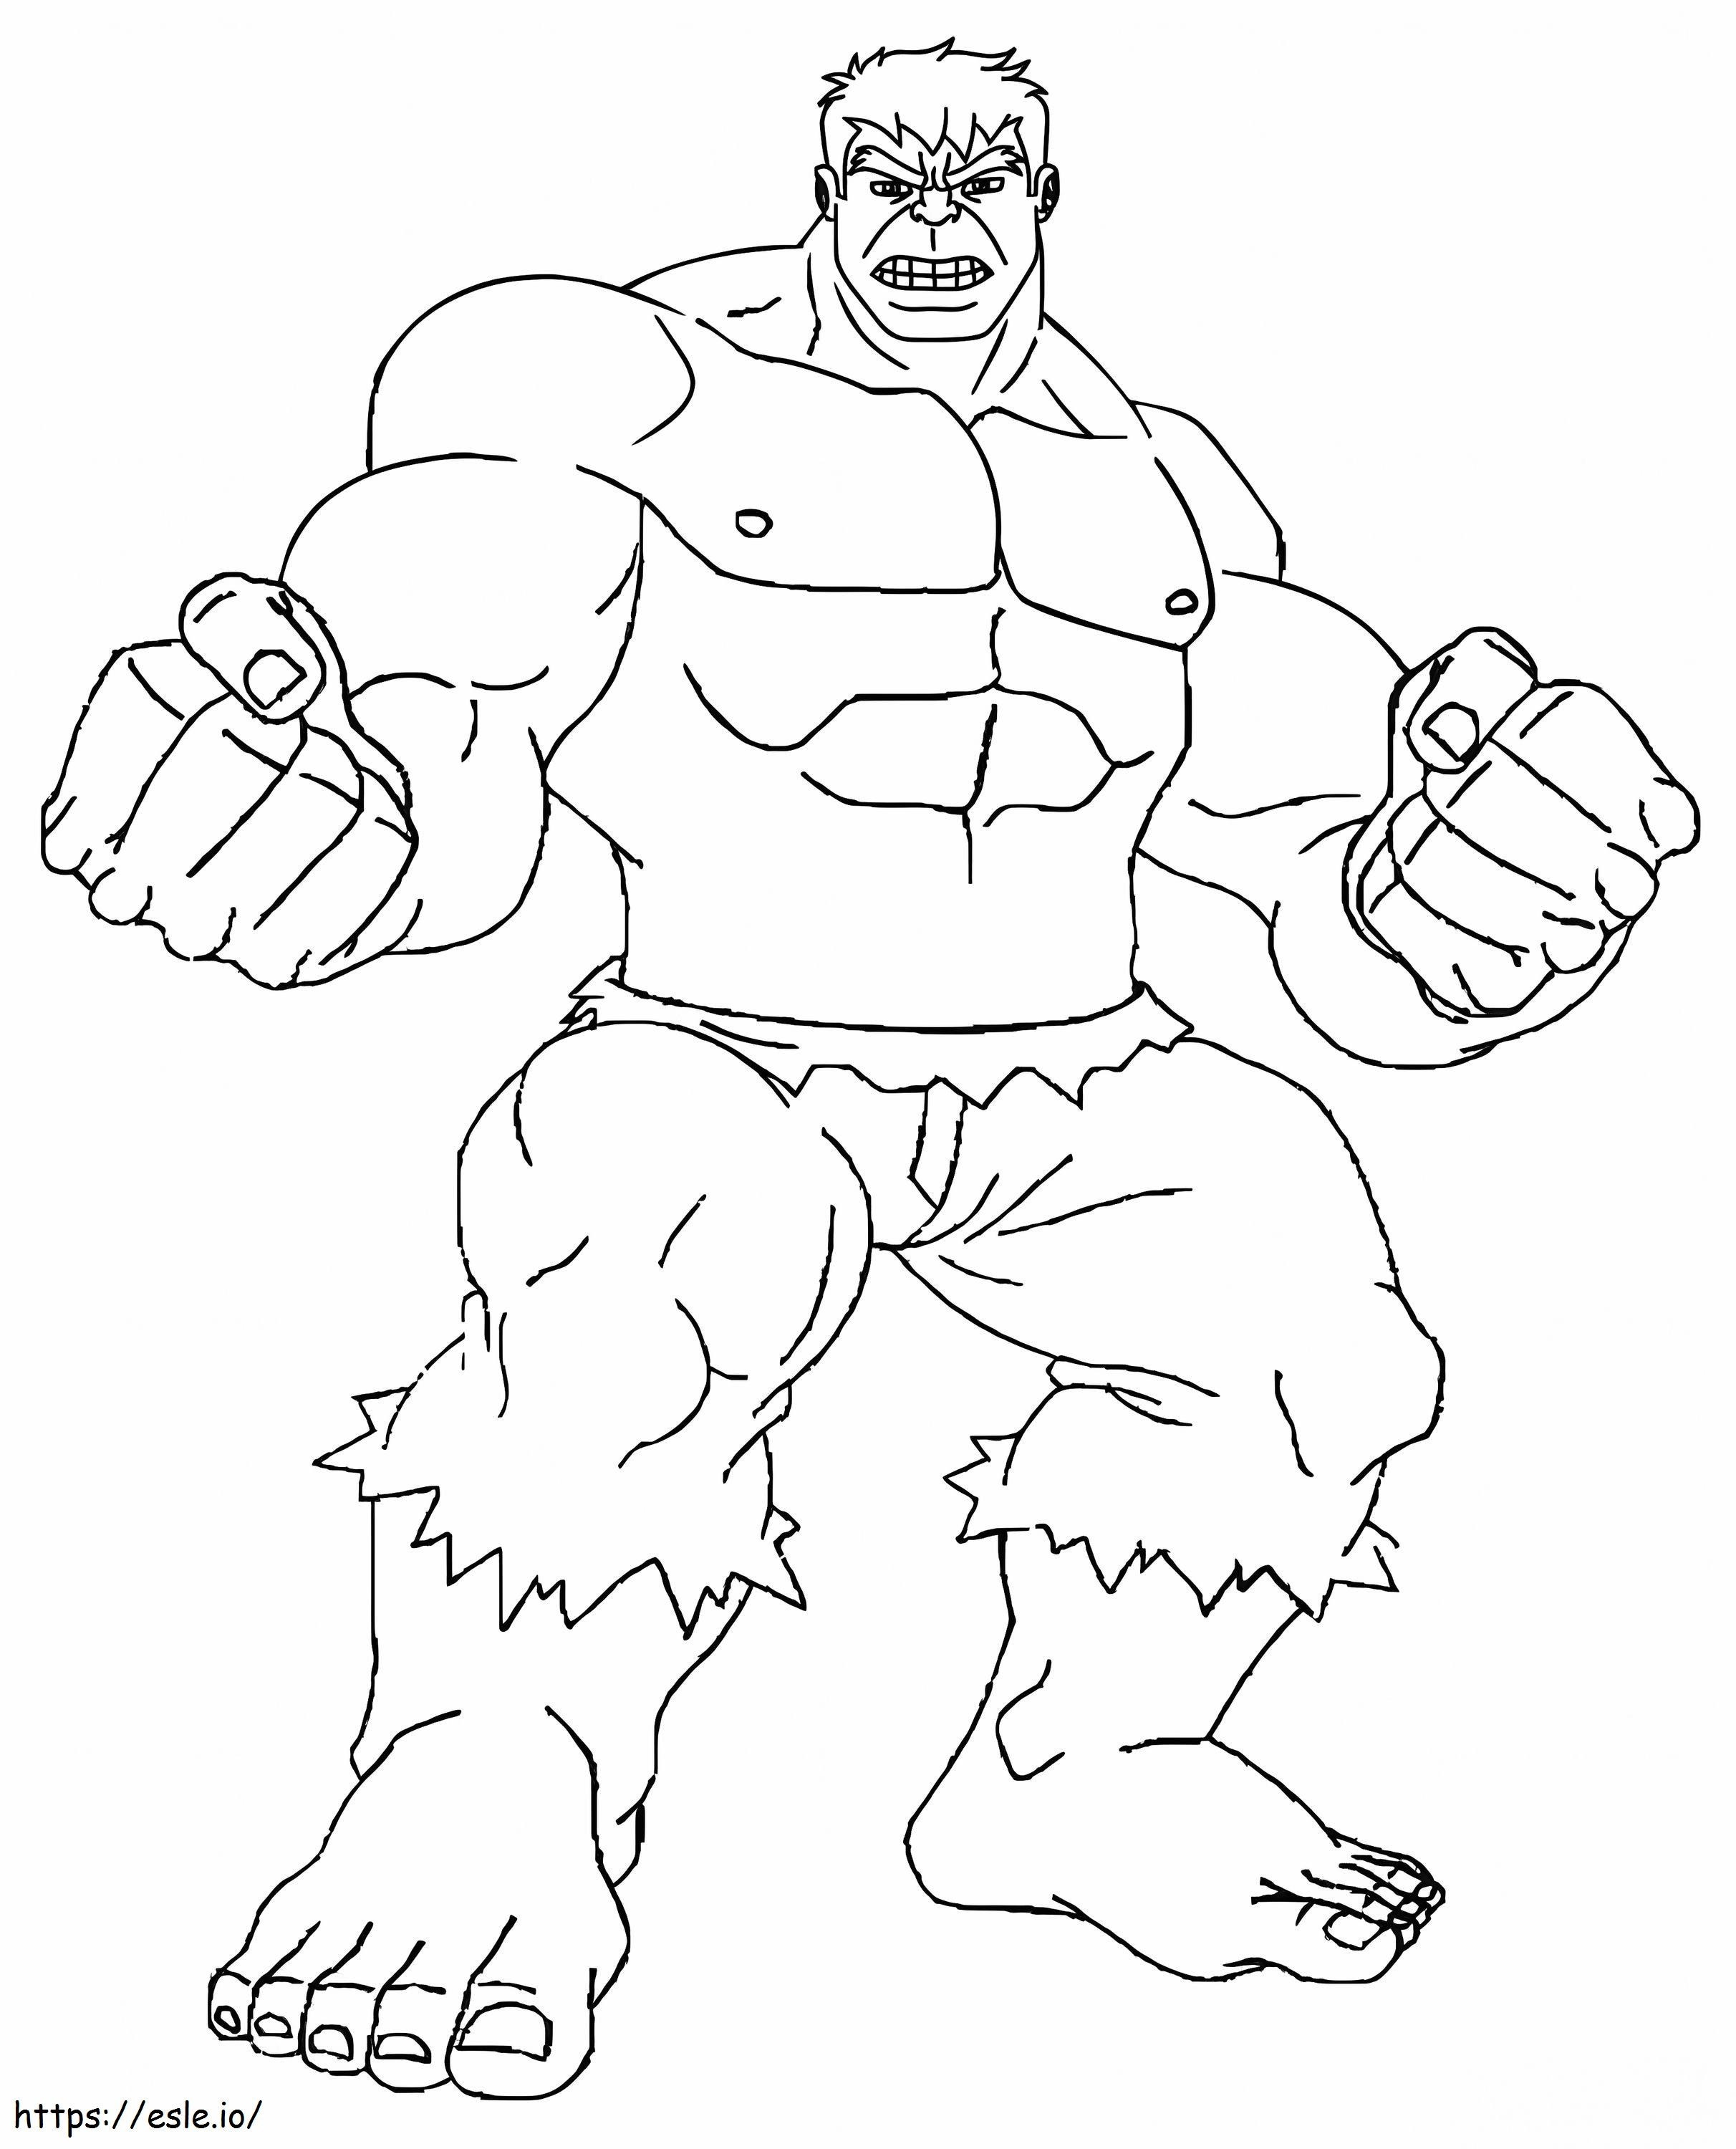 Hulk jest bardzo silny kolorowanka